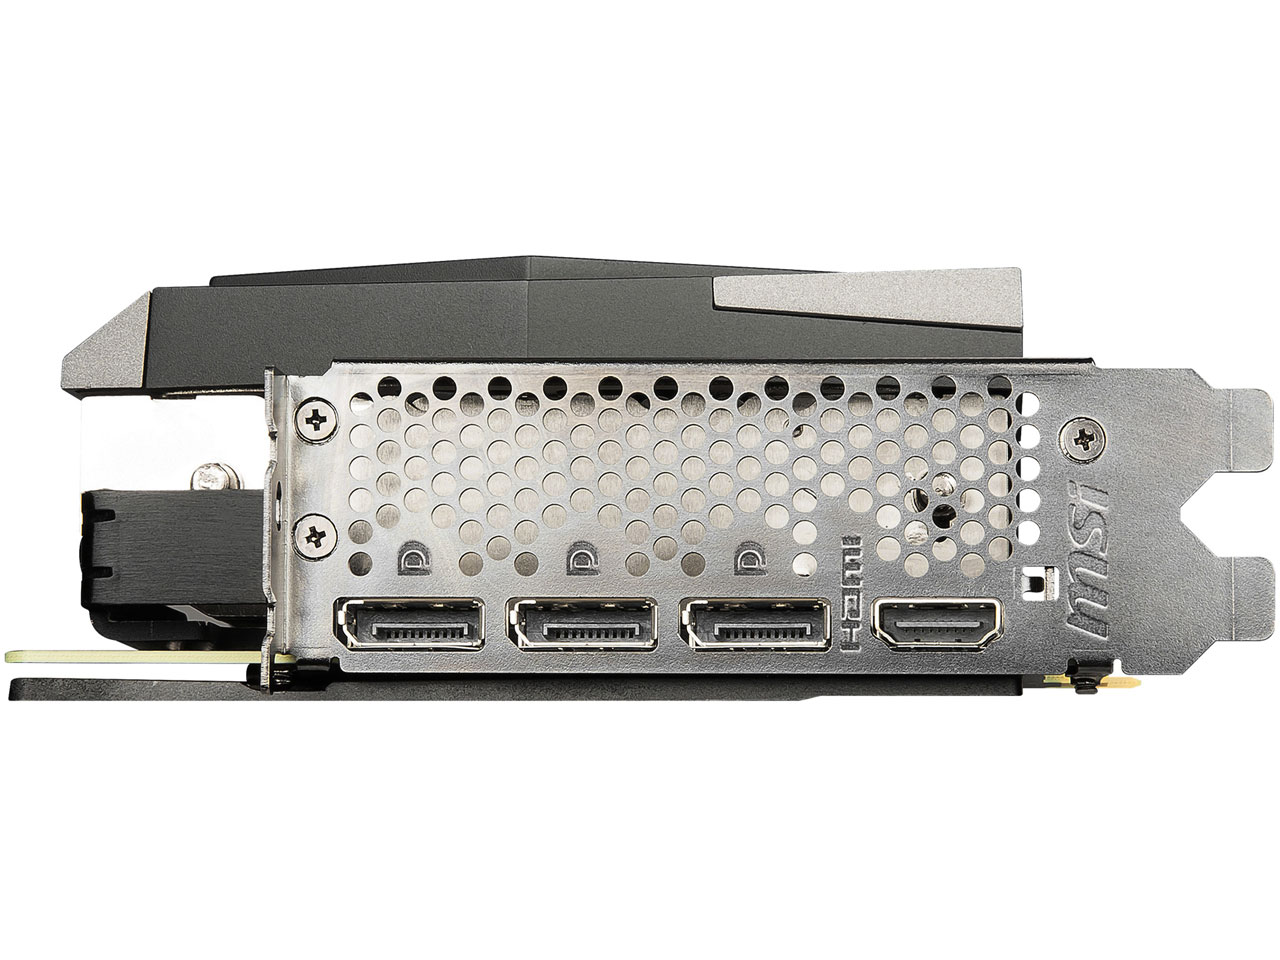 『本体 接続部分』 GeForce RTX 3080 GAMING X TRIO 10G [PCIExp 10GB] の製品画像